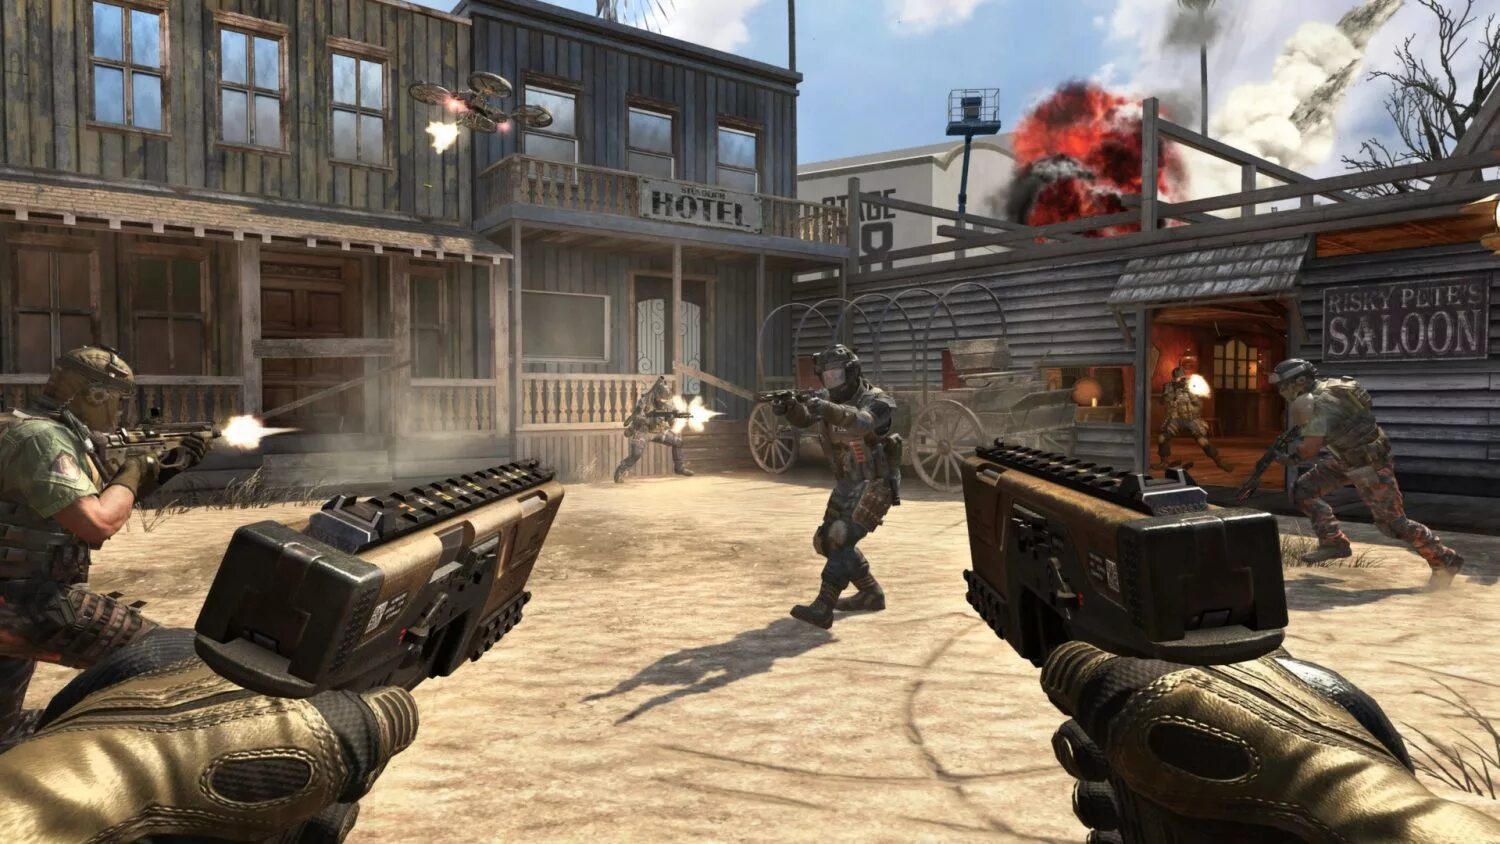 Бесплатные мультиплеерные игры. Call of Duty Black ops 2. AGR Black ops 2. Call of Duty: Black ops. Call of Duty: Black ops 2 - Uprising.